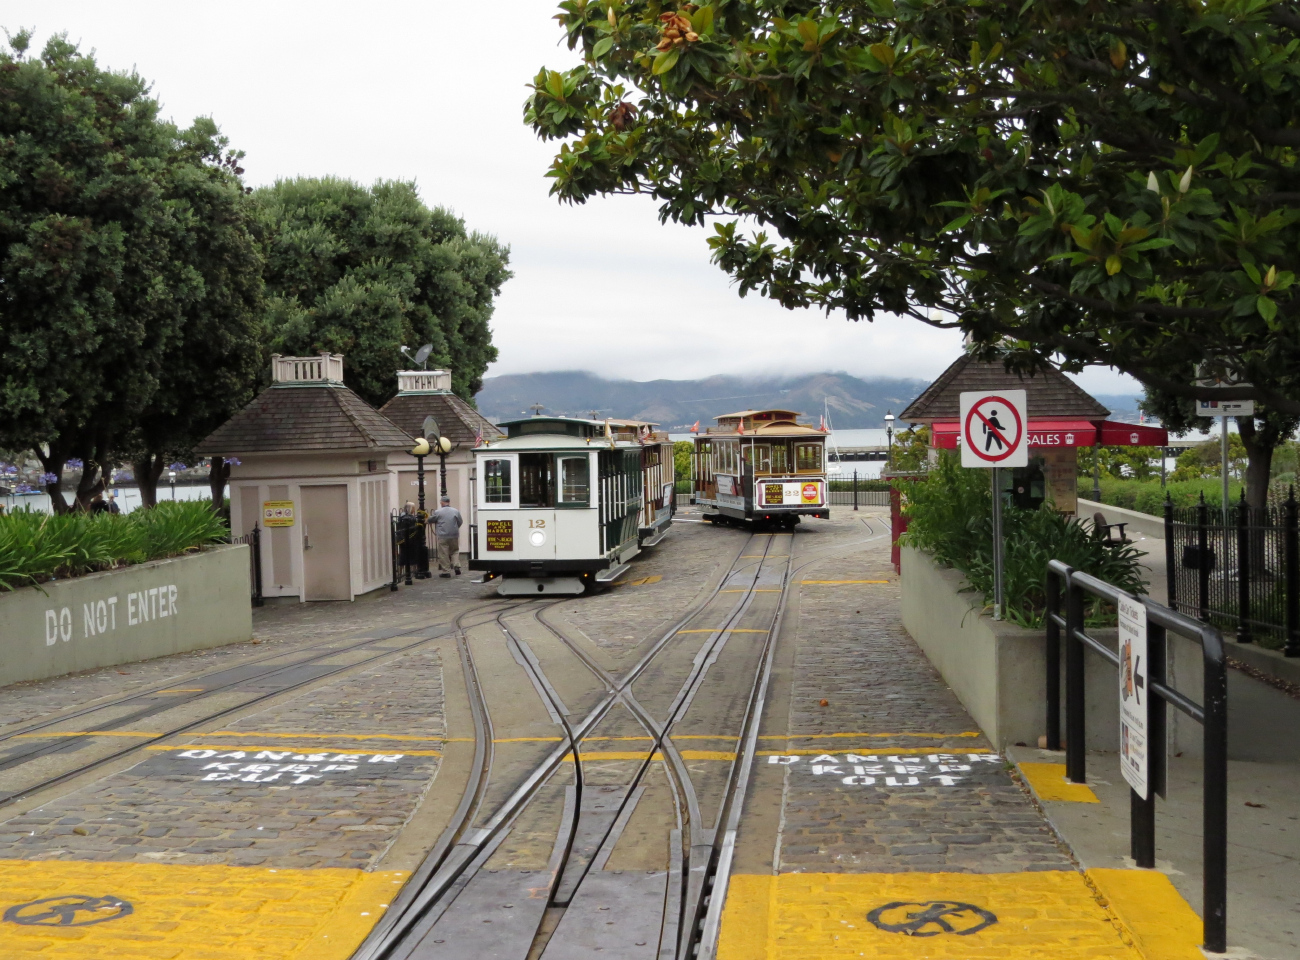 Сан-Франциско, область залива, Carter cable car № 12; Сан-Франциско, область залива, Mahoney cable car № 22; Сан-Франциско, область залива — Линии и инфраструктура кабельного трамвая